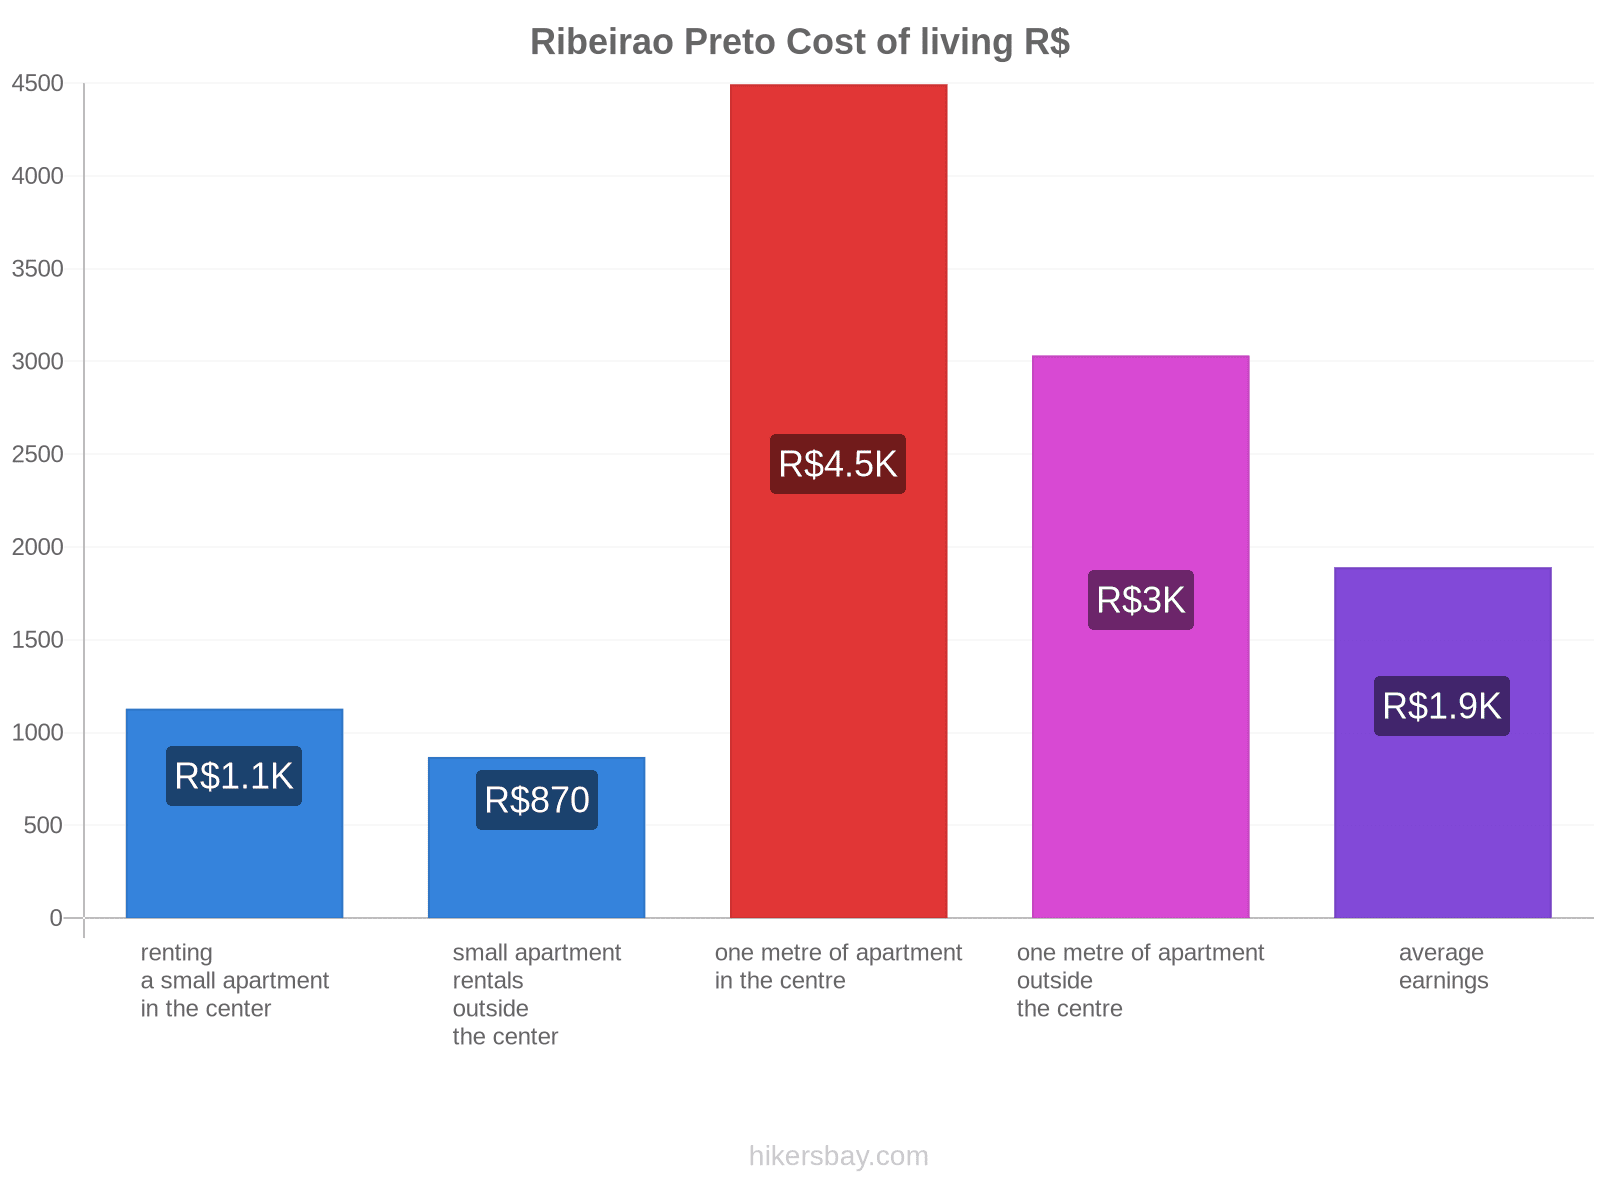 Ribeirao Preto cost of living hikersbay.com